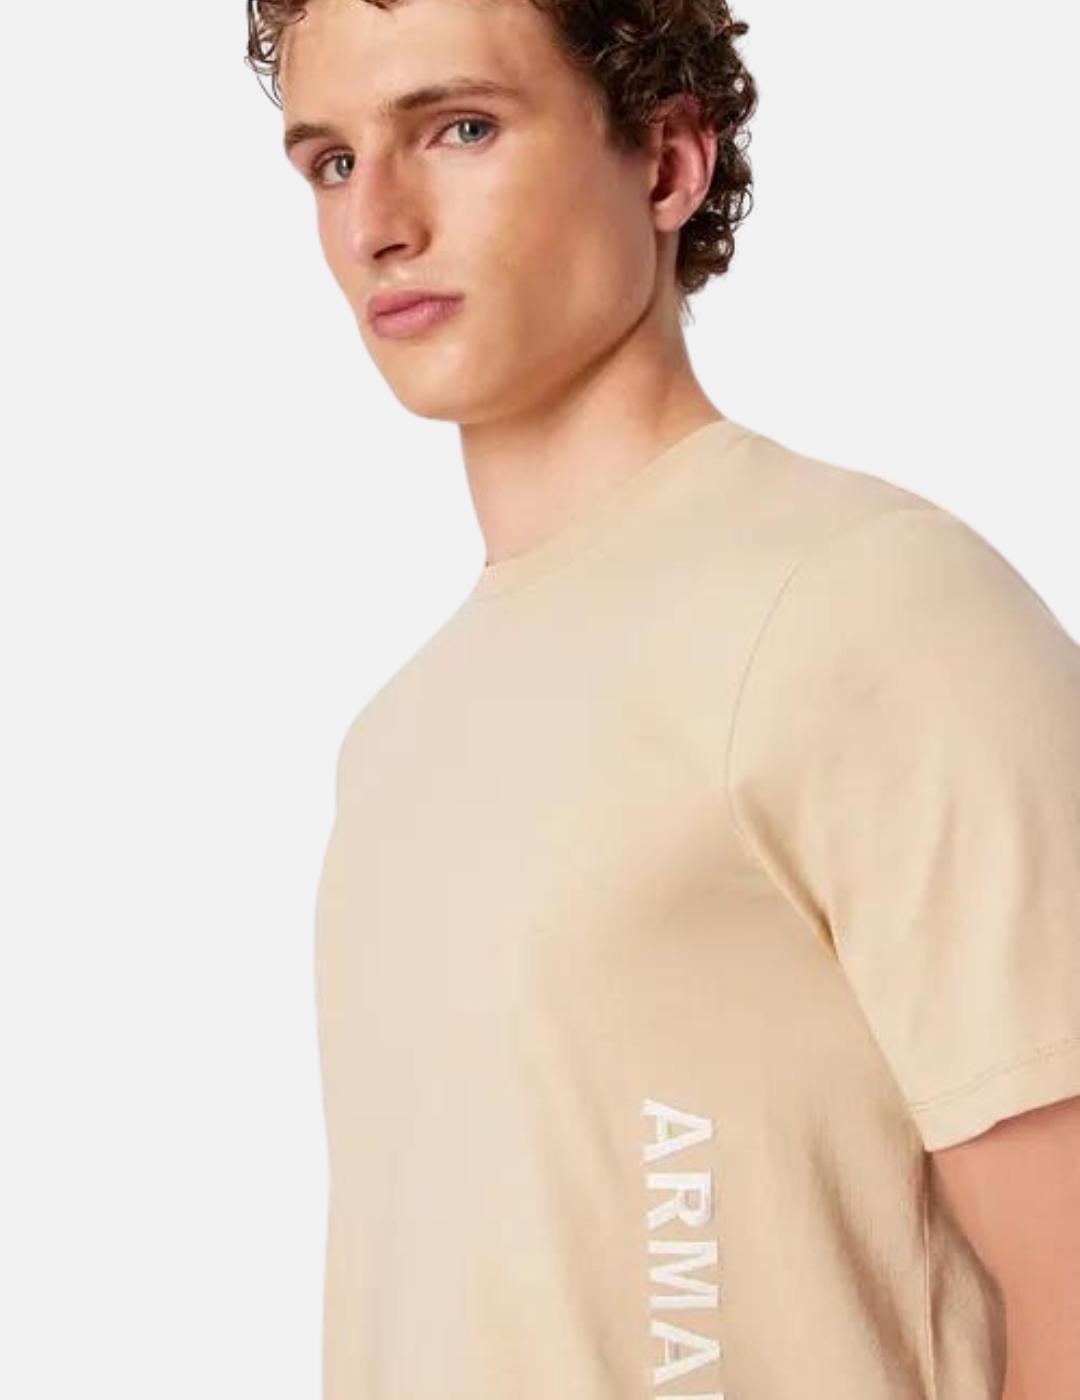 Camiseta Armani exchance camel logo lateral hombre